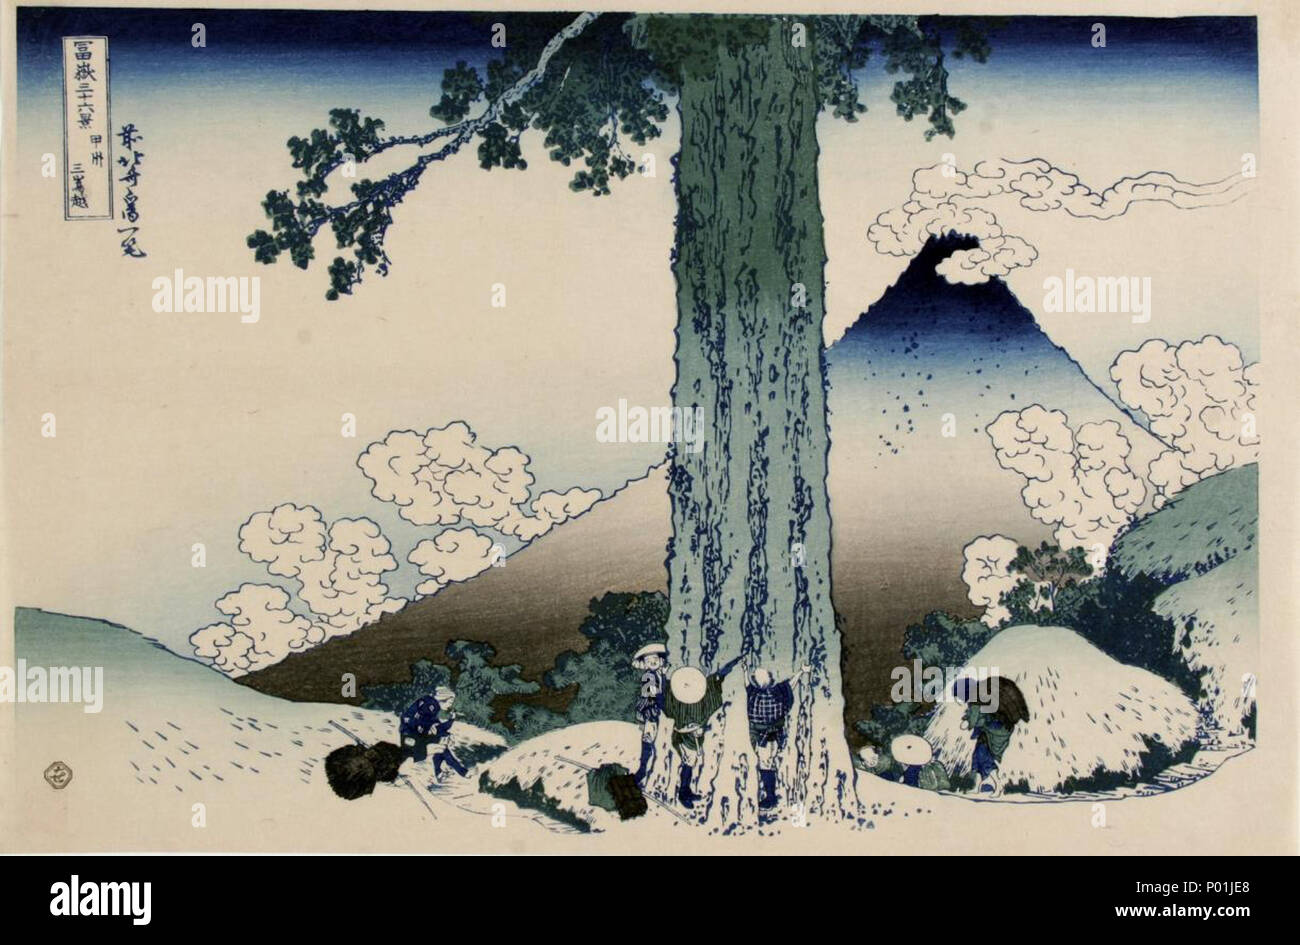 . Englisch: Katsushika Hokusai (1760-1849), Mishima Mountain Pass in Kai Provinz (1829-1833). Sammlung japanischer Drucke von Centre Céramique, Maastricht, Niederlande. 25. November 2014. Katsushika Hokusai (1760-1849) 12 Katsushika Hokusai (1760-1849), De bergpas van Mishima in de provincie Kai (1829-33) Stockfoto